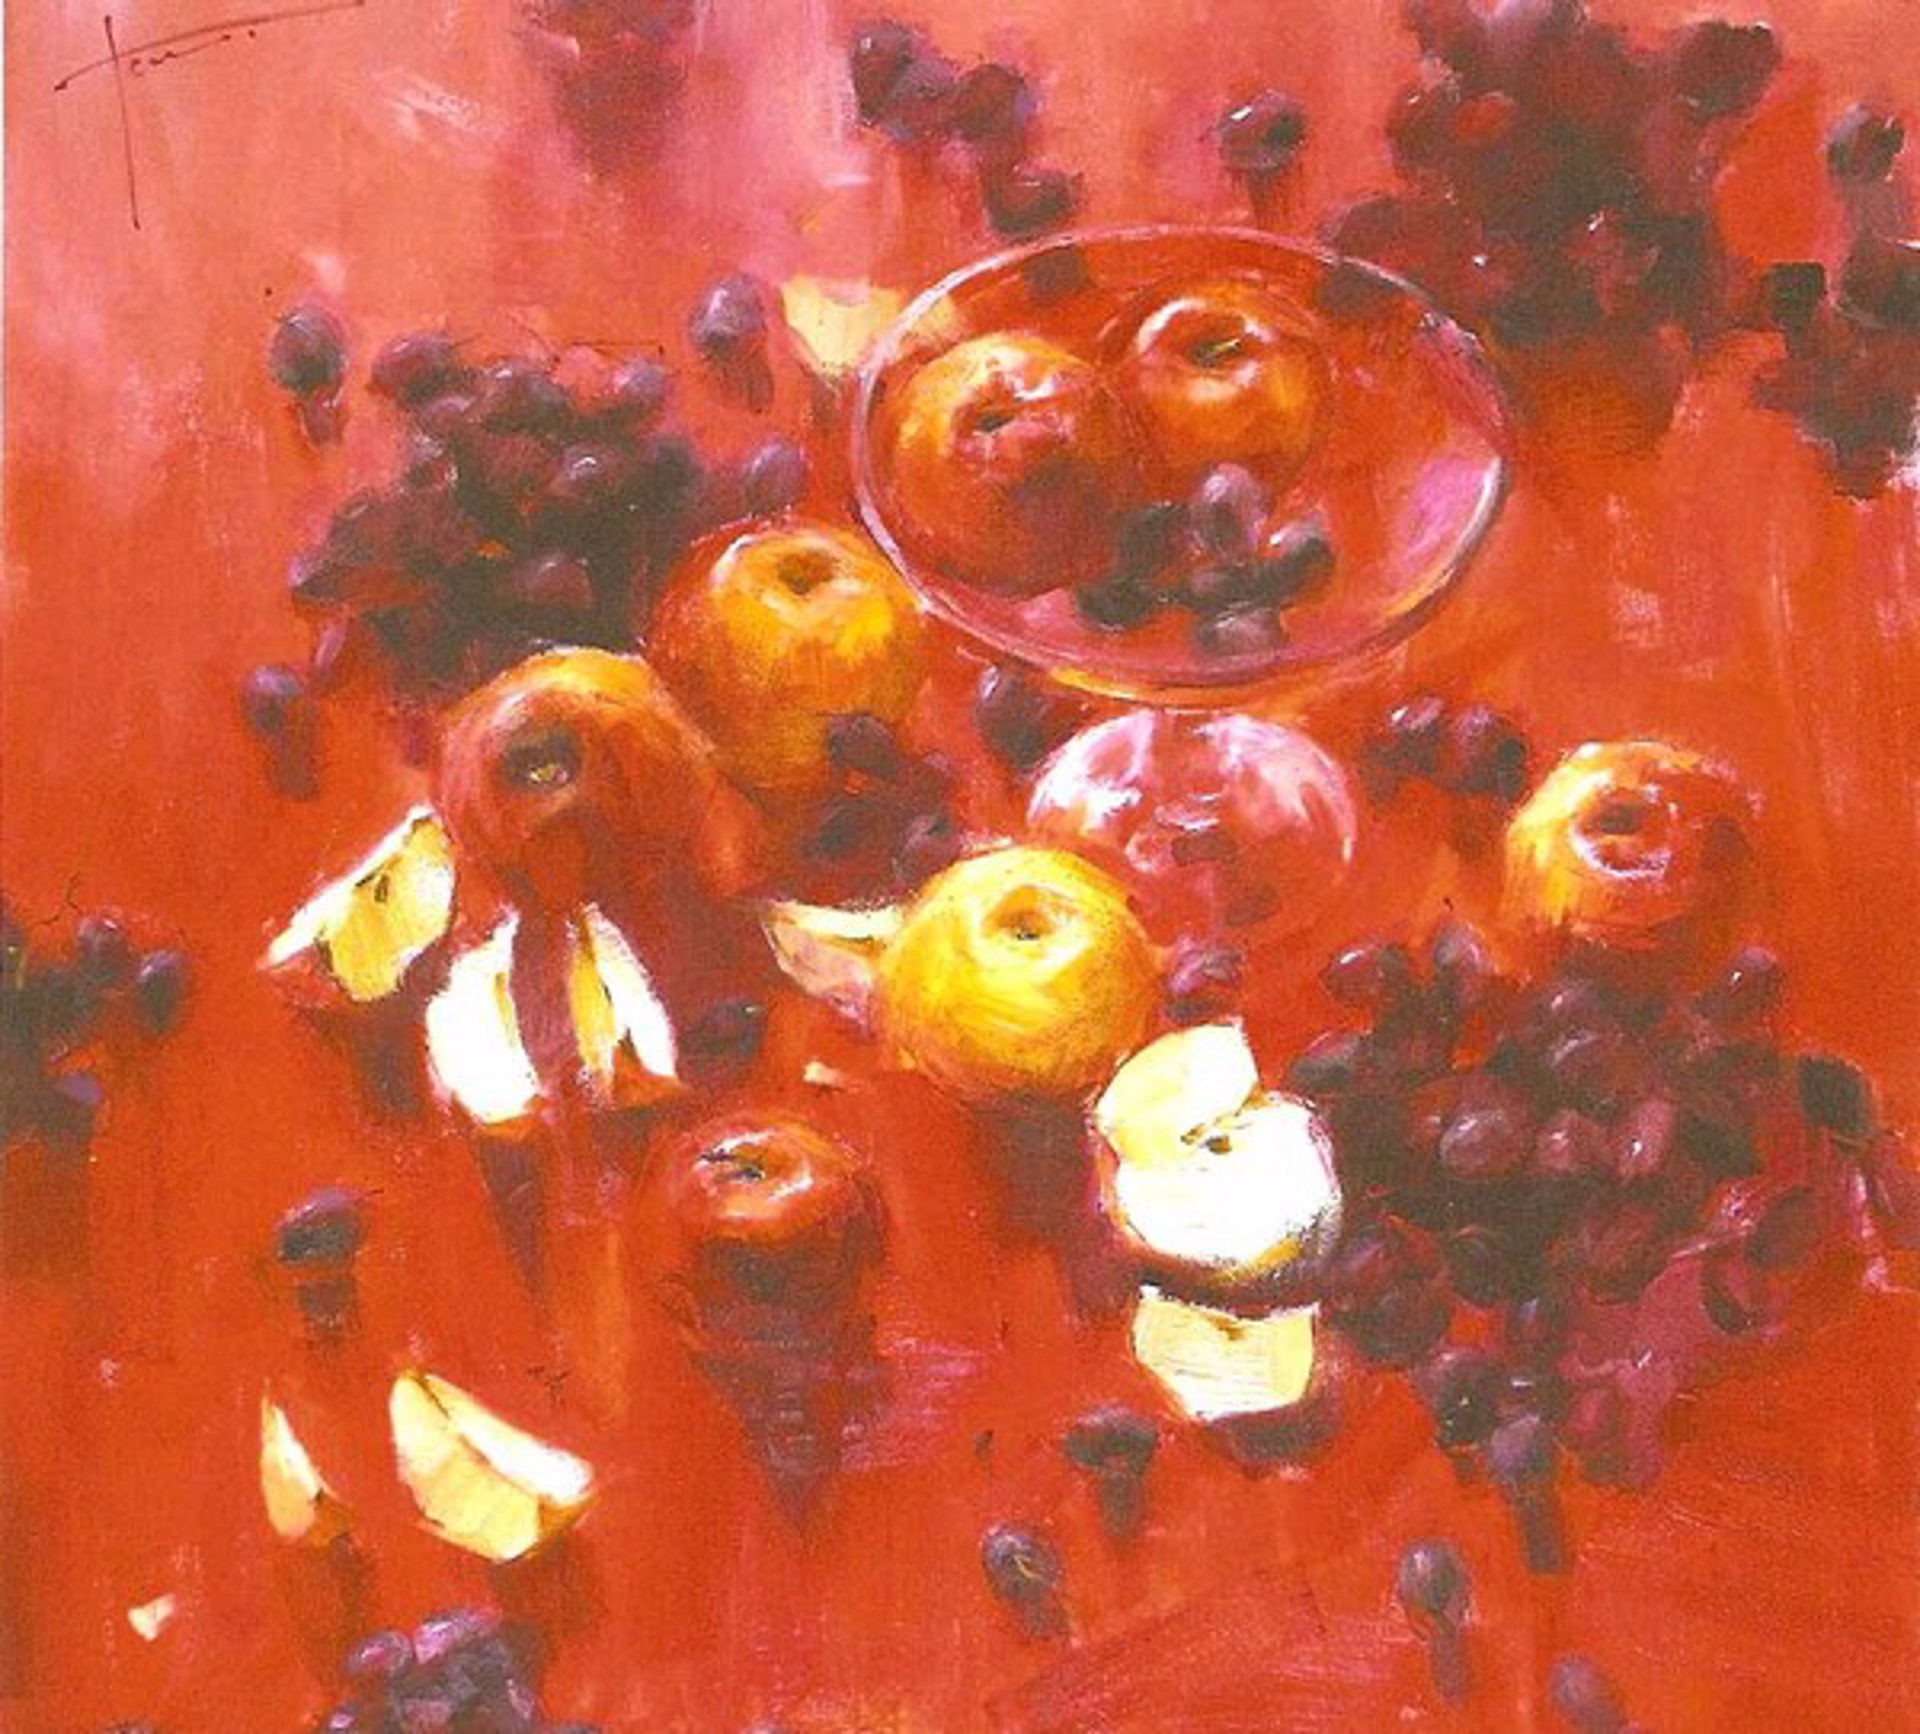 Red Still Life with Apples by Yana Golubyatnikova